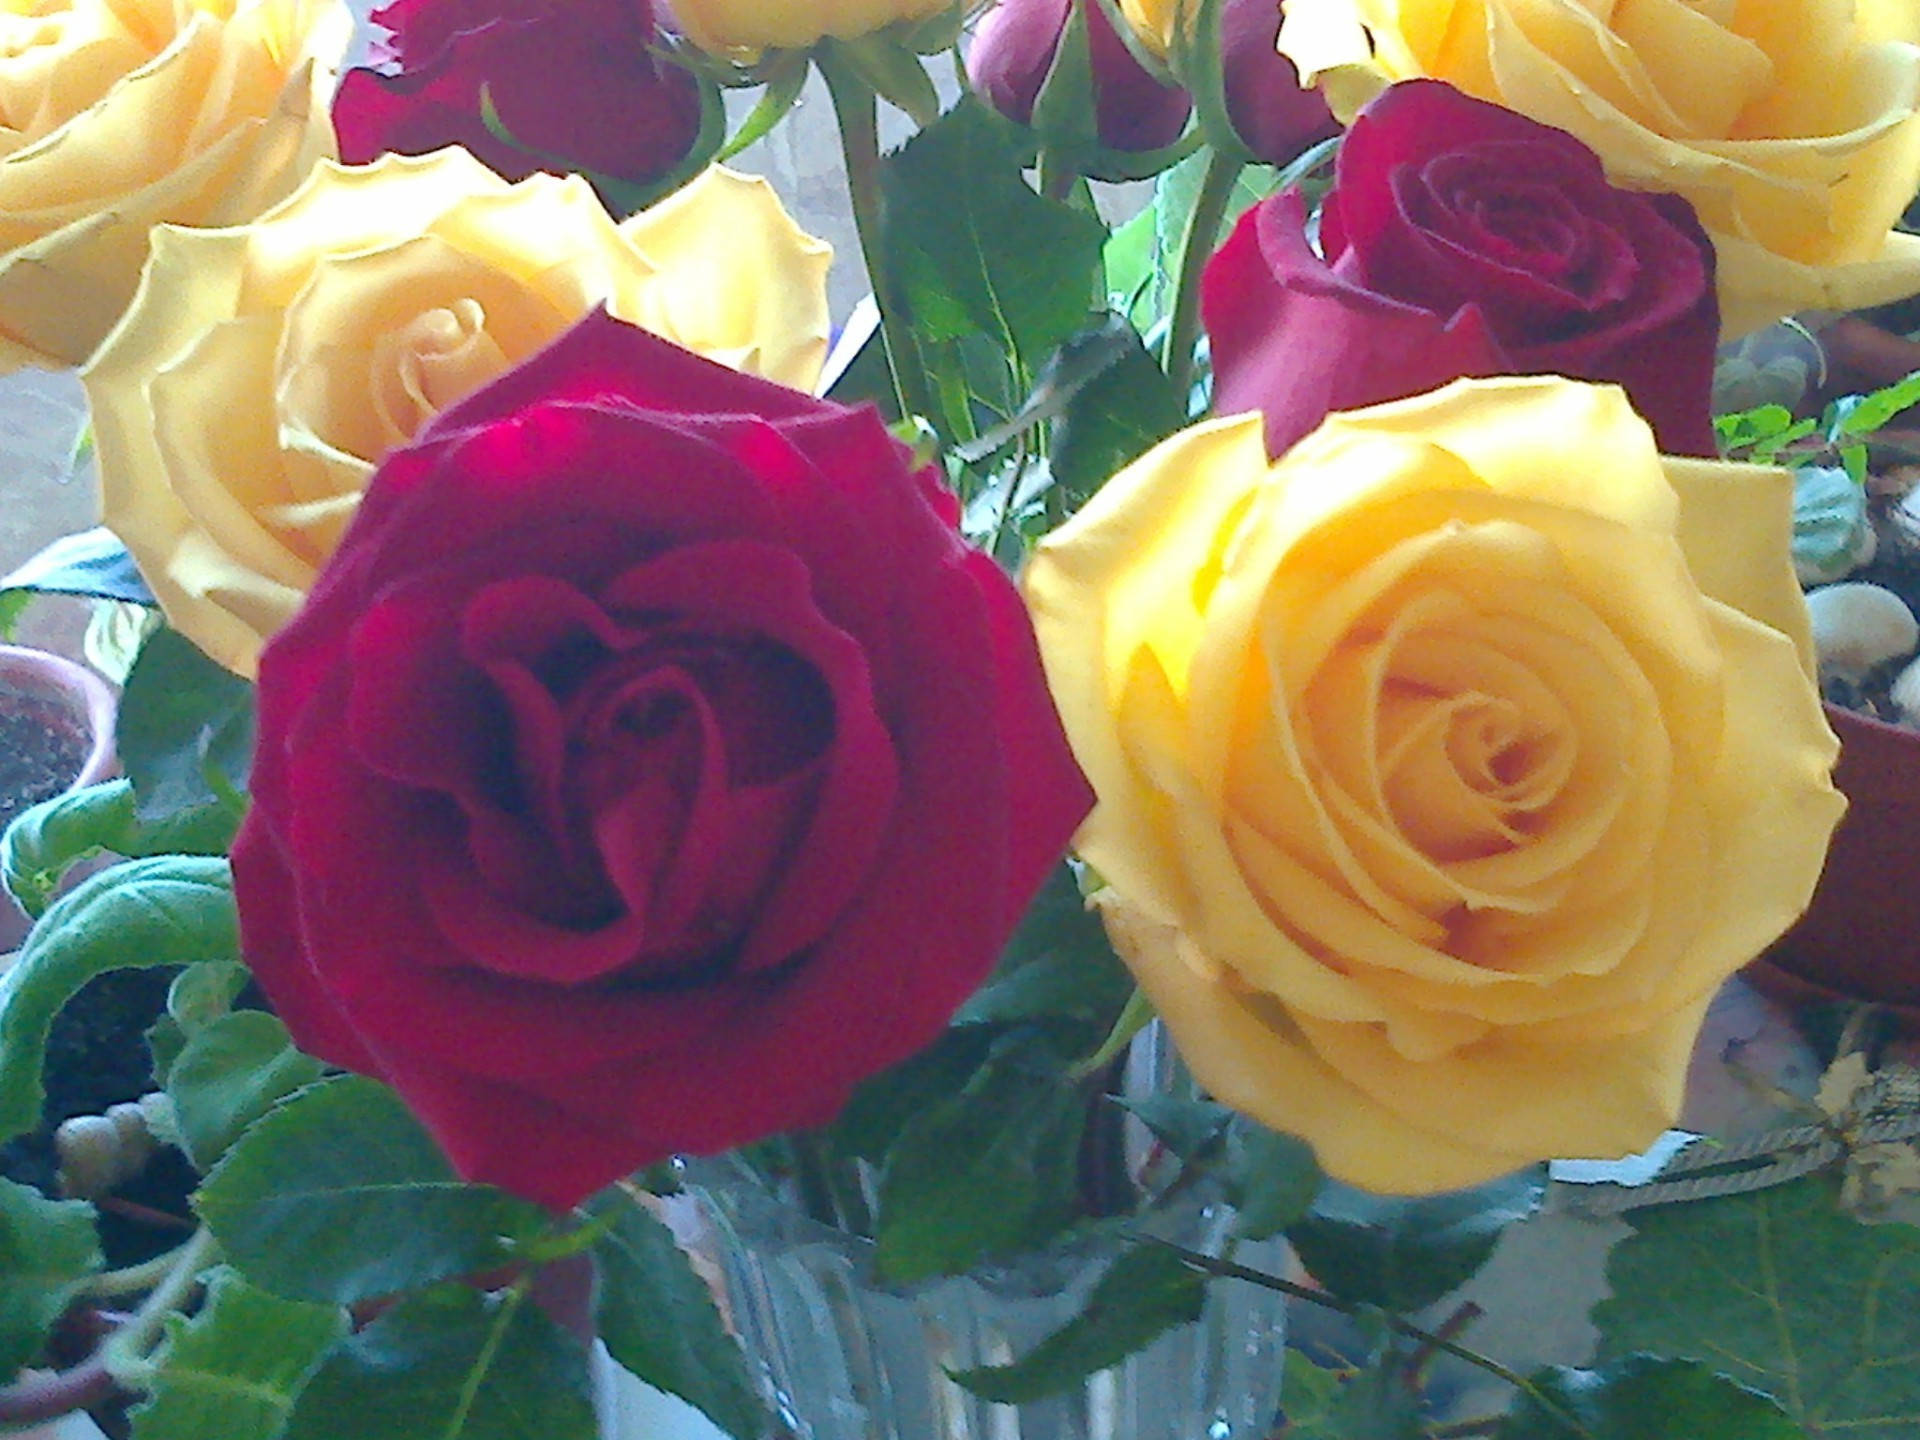 цветы роза любовь букет романтика подарок свадьба цветок юбилей лепесток цветочные блюминг праздник романтический день рождения флорист брак любовь невеста расположение флора